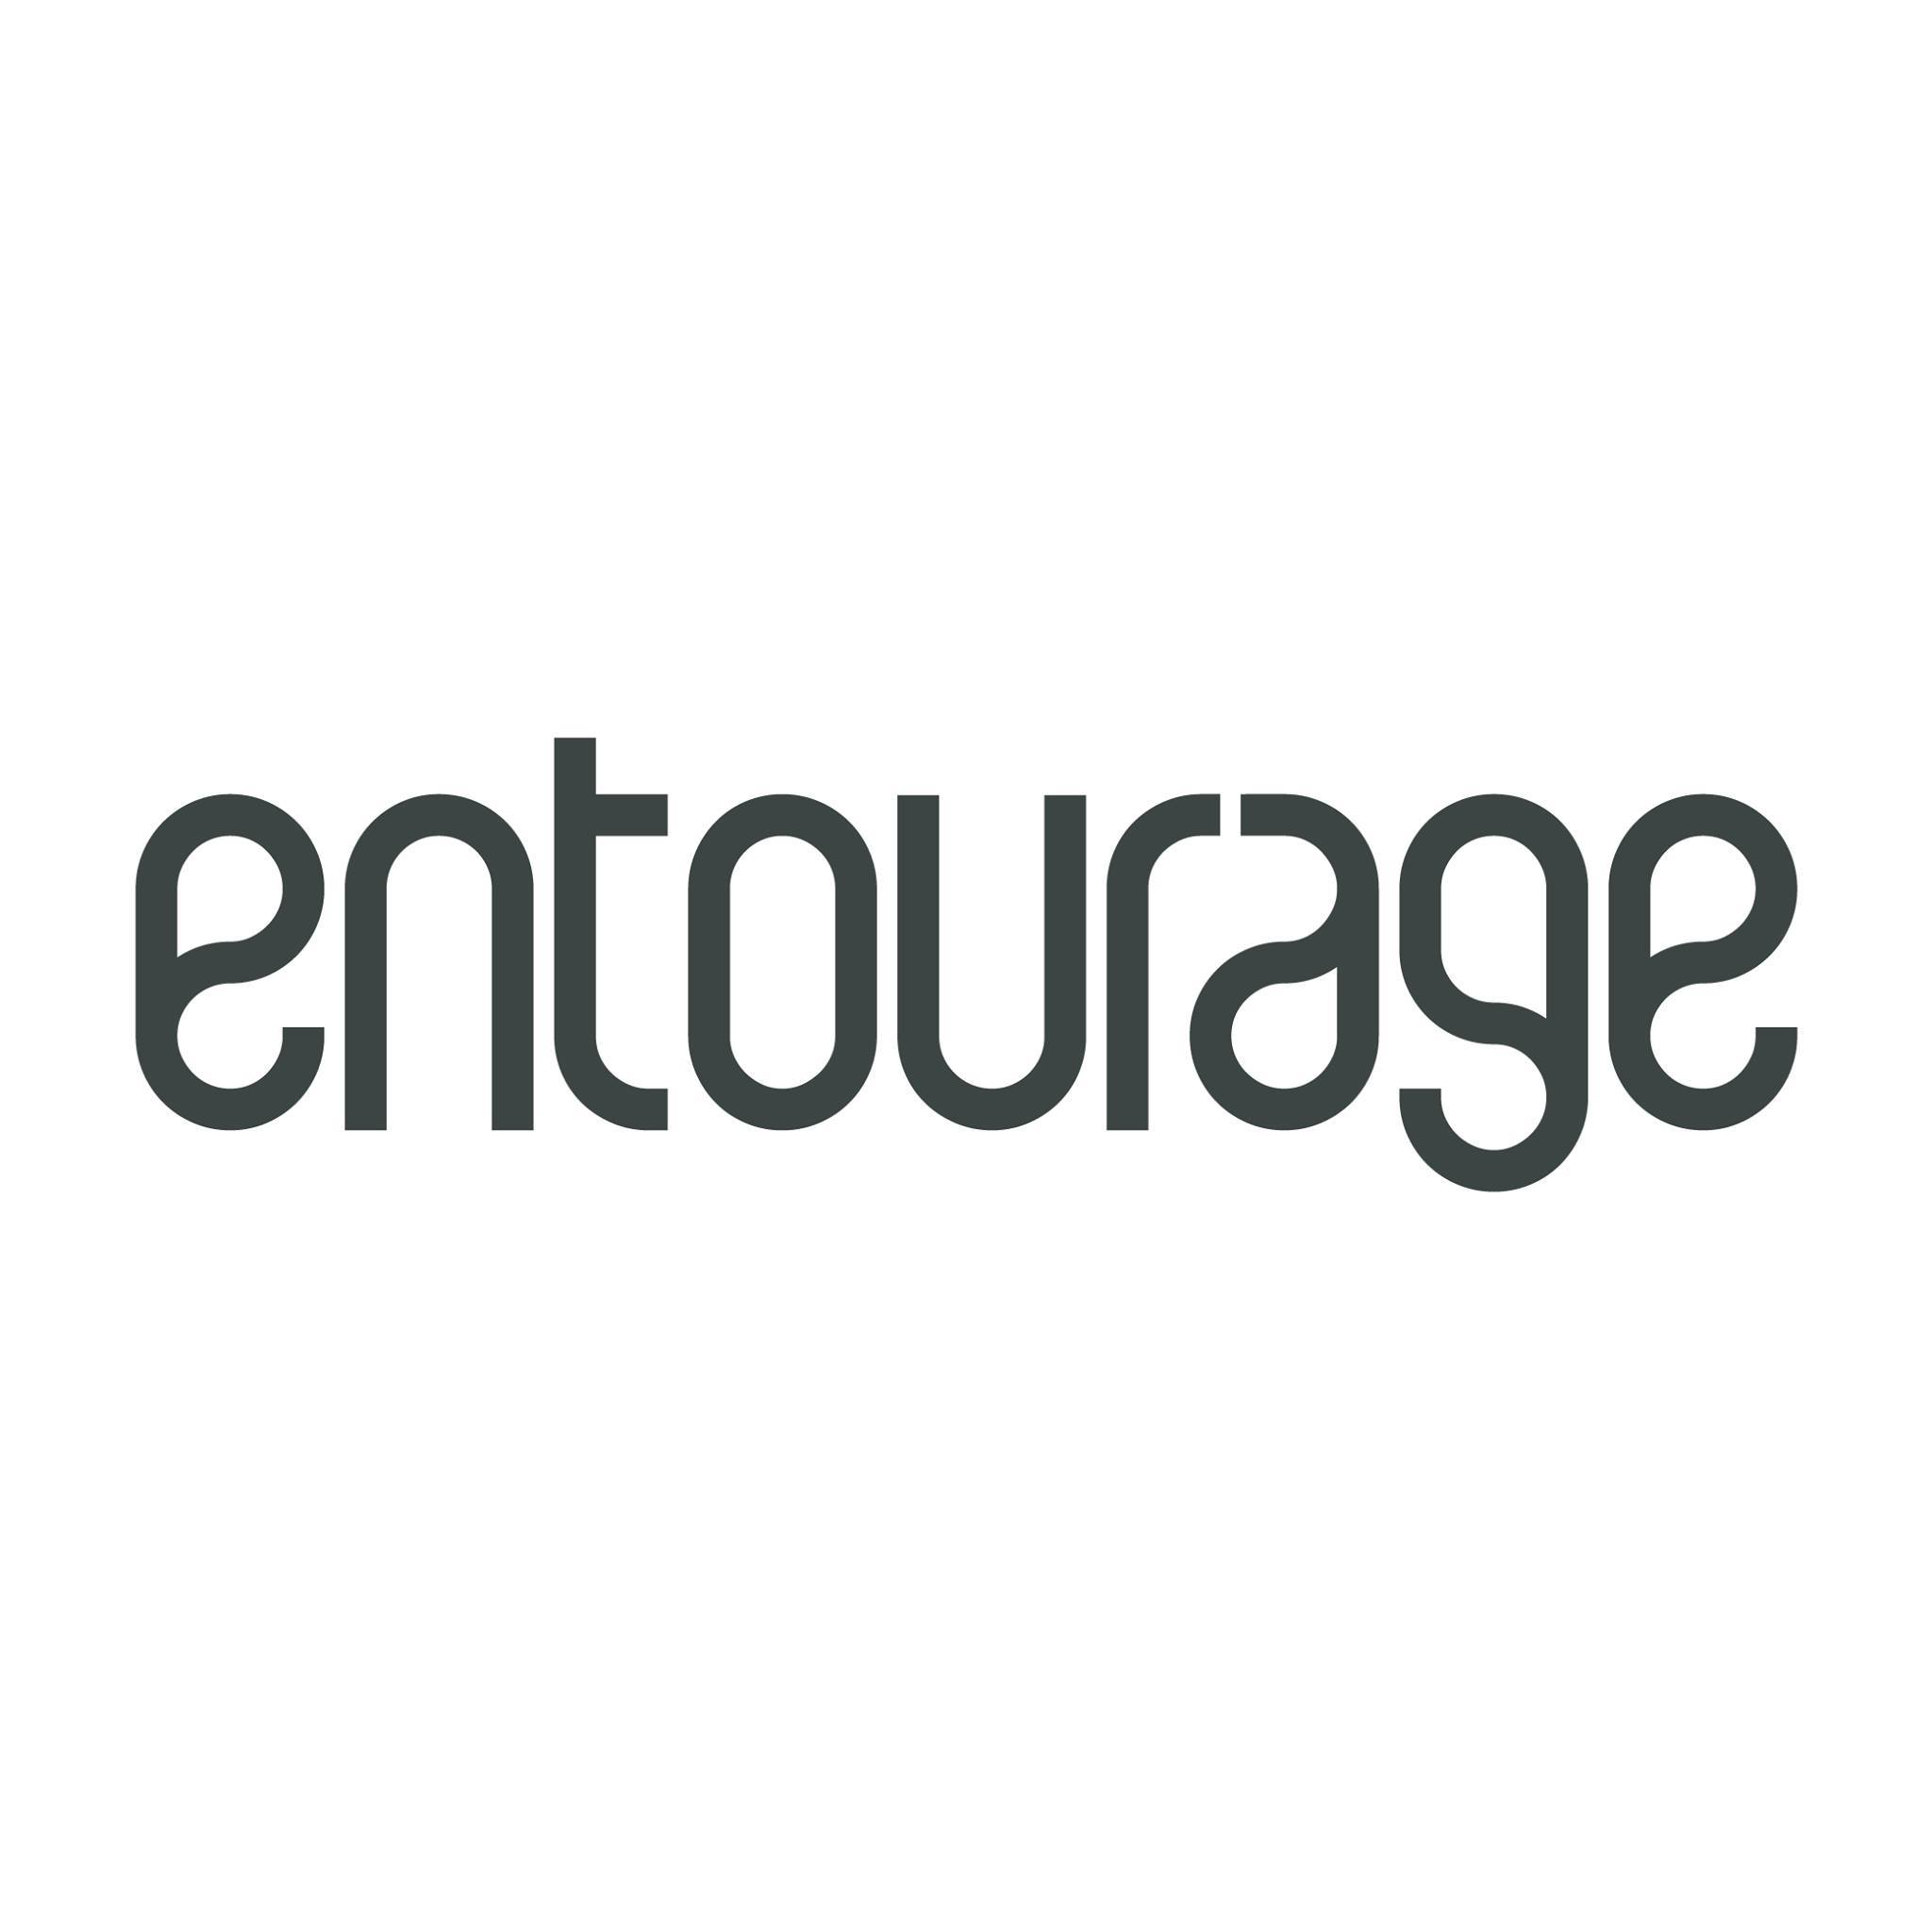 Image result for Entourage Marketing & Events